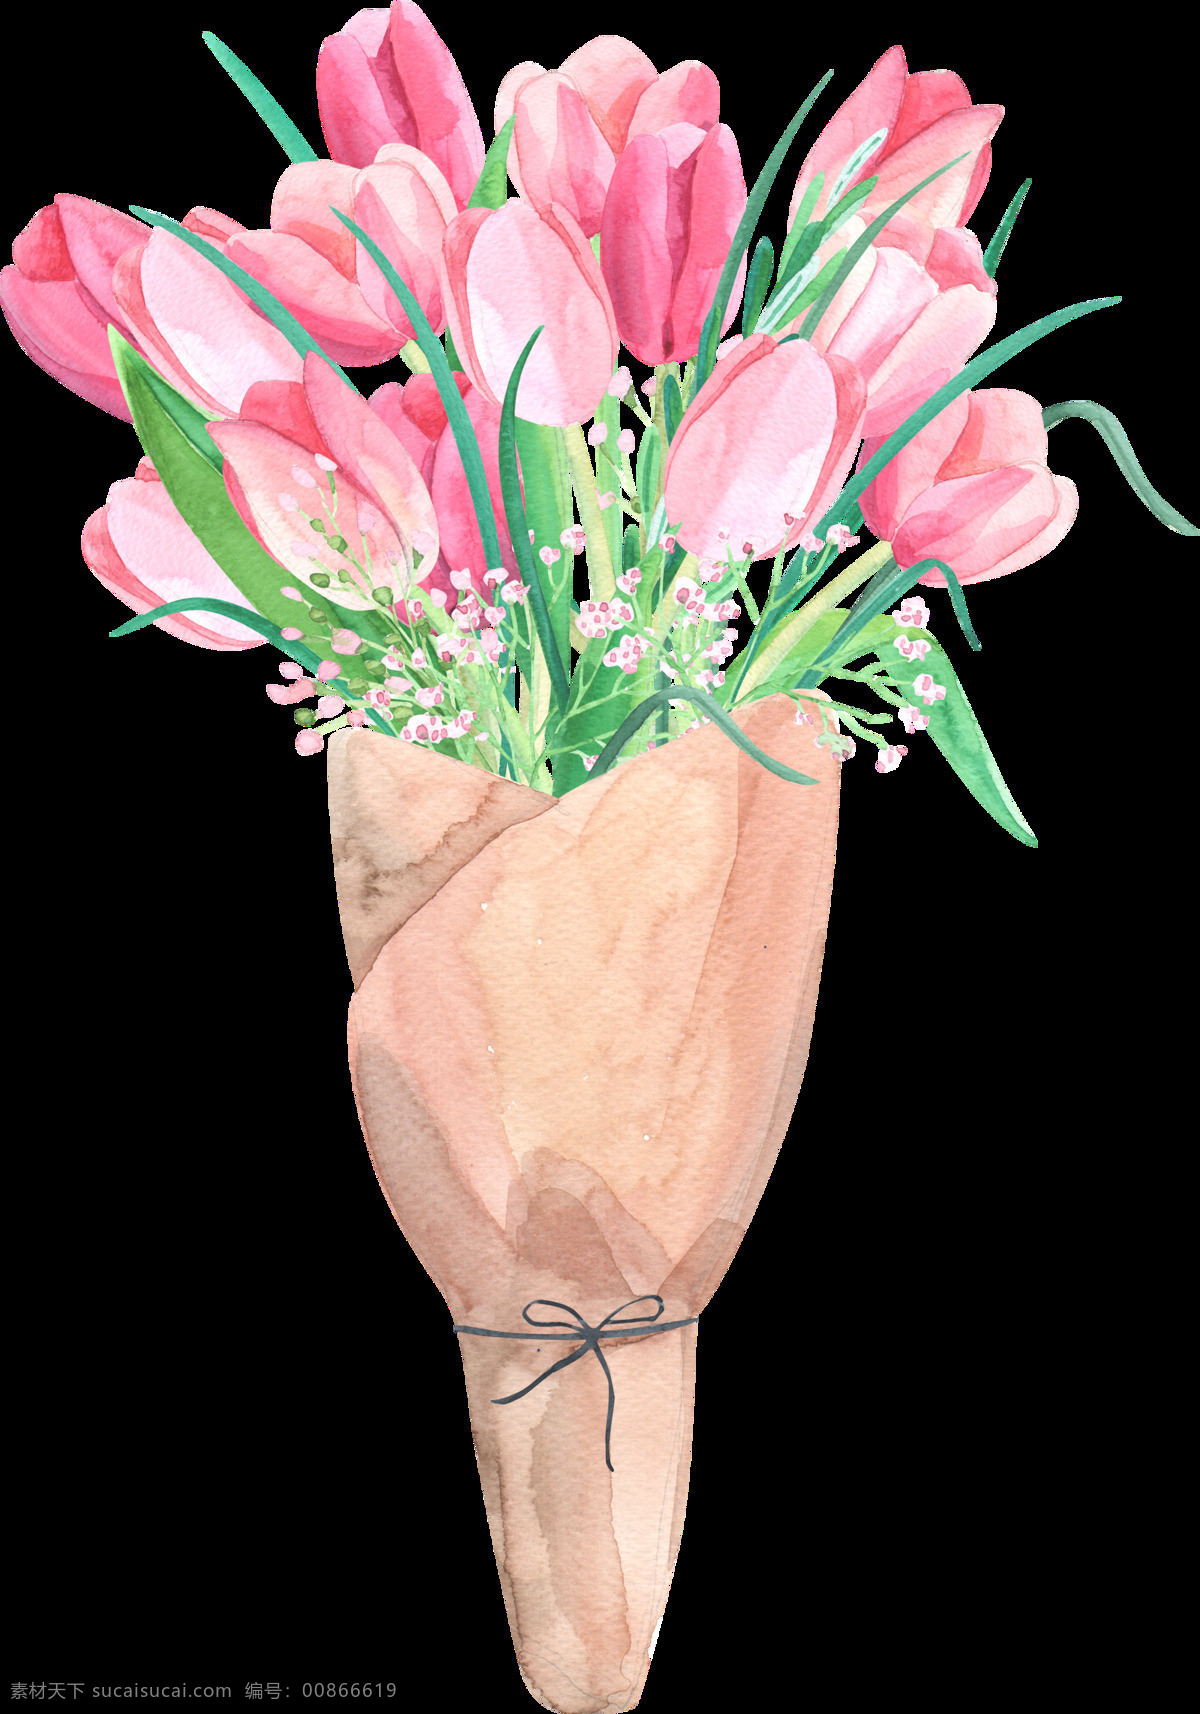 水彩花束素材 水彩 包装纸 花束 叶子 花朵 绿色 粉色 矢量素材 设计素材